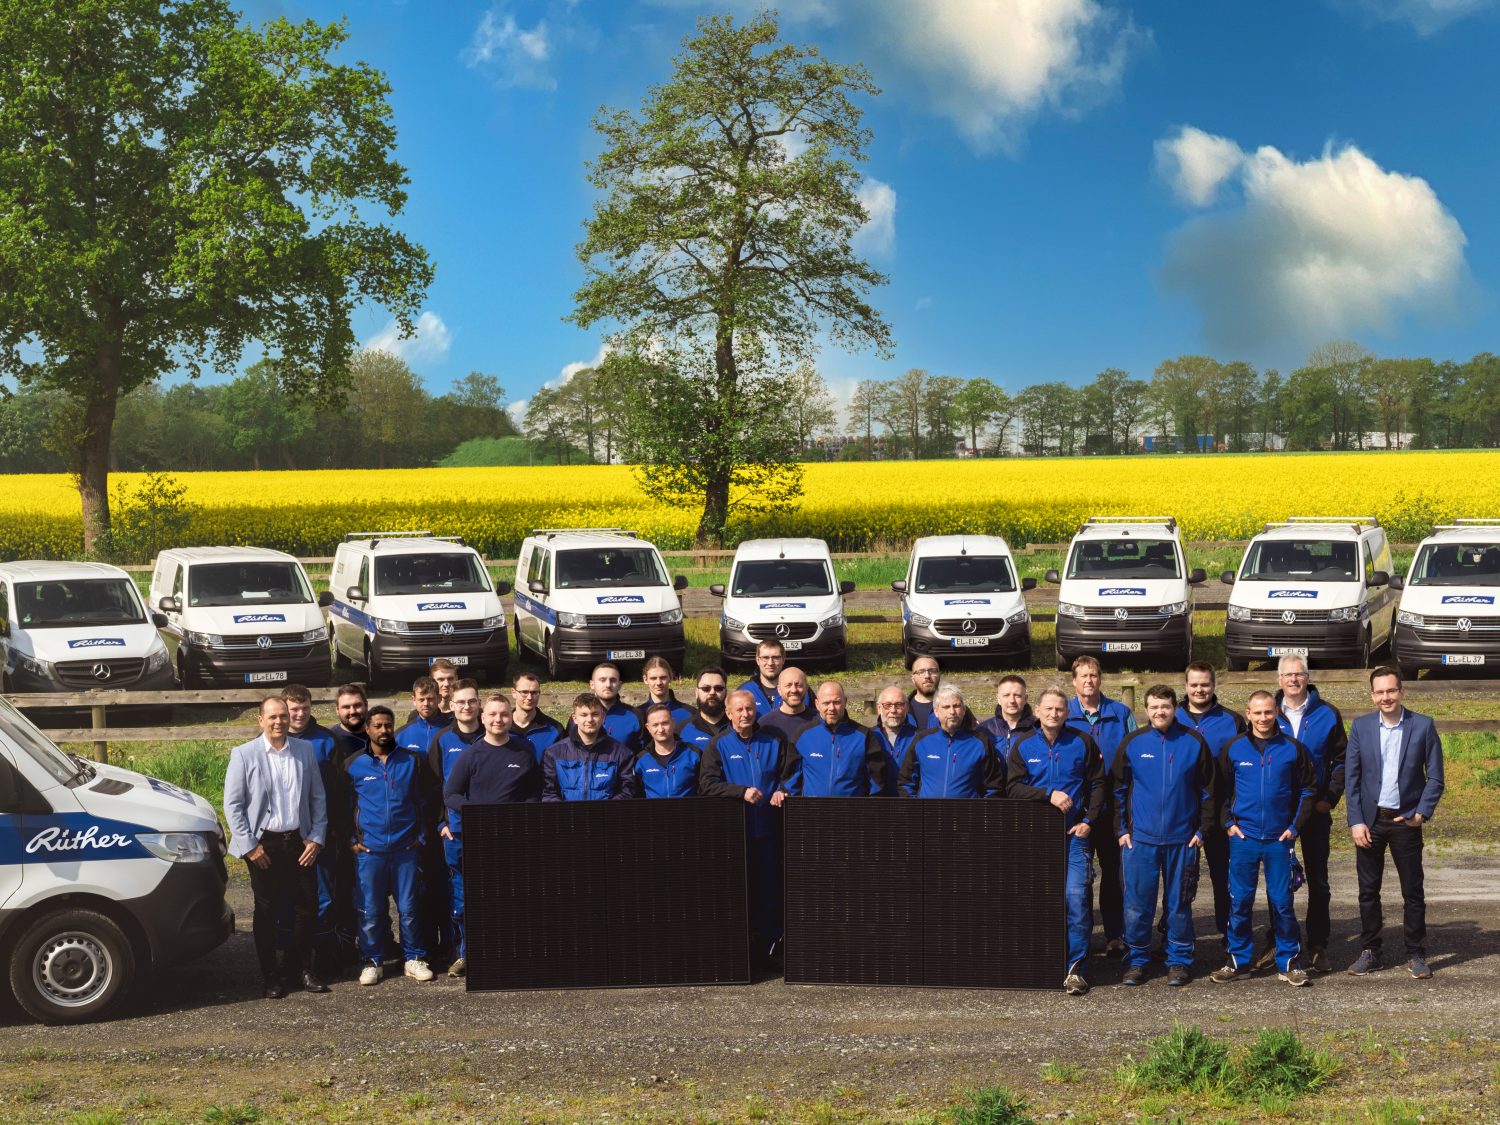 Gruppenfoto der Rüther Elektriker mit Firmenfahrzeug und Photovoltaik / PV-Anlage in Papenburg, Emsland, Ostfriesland